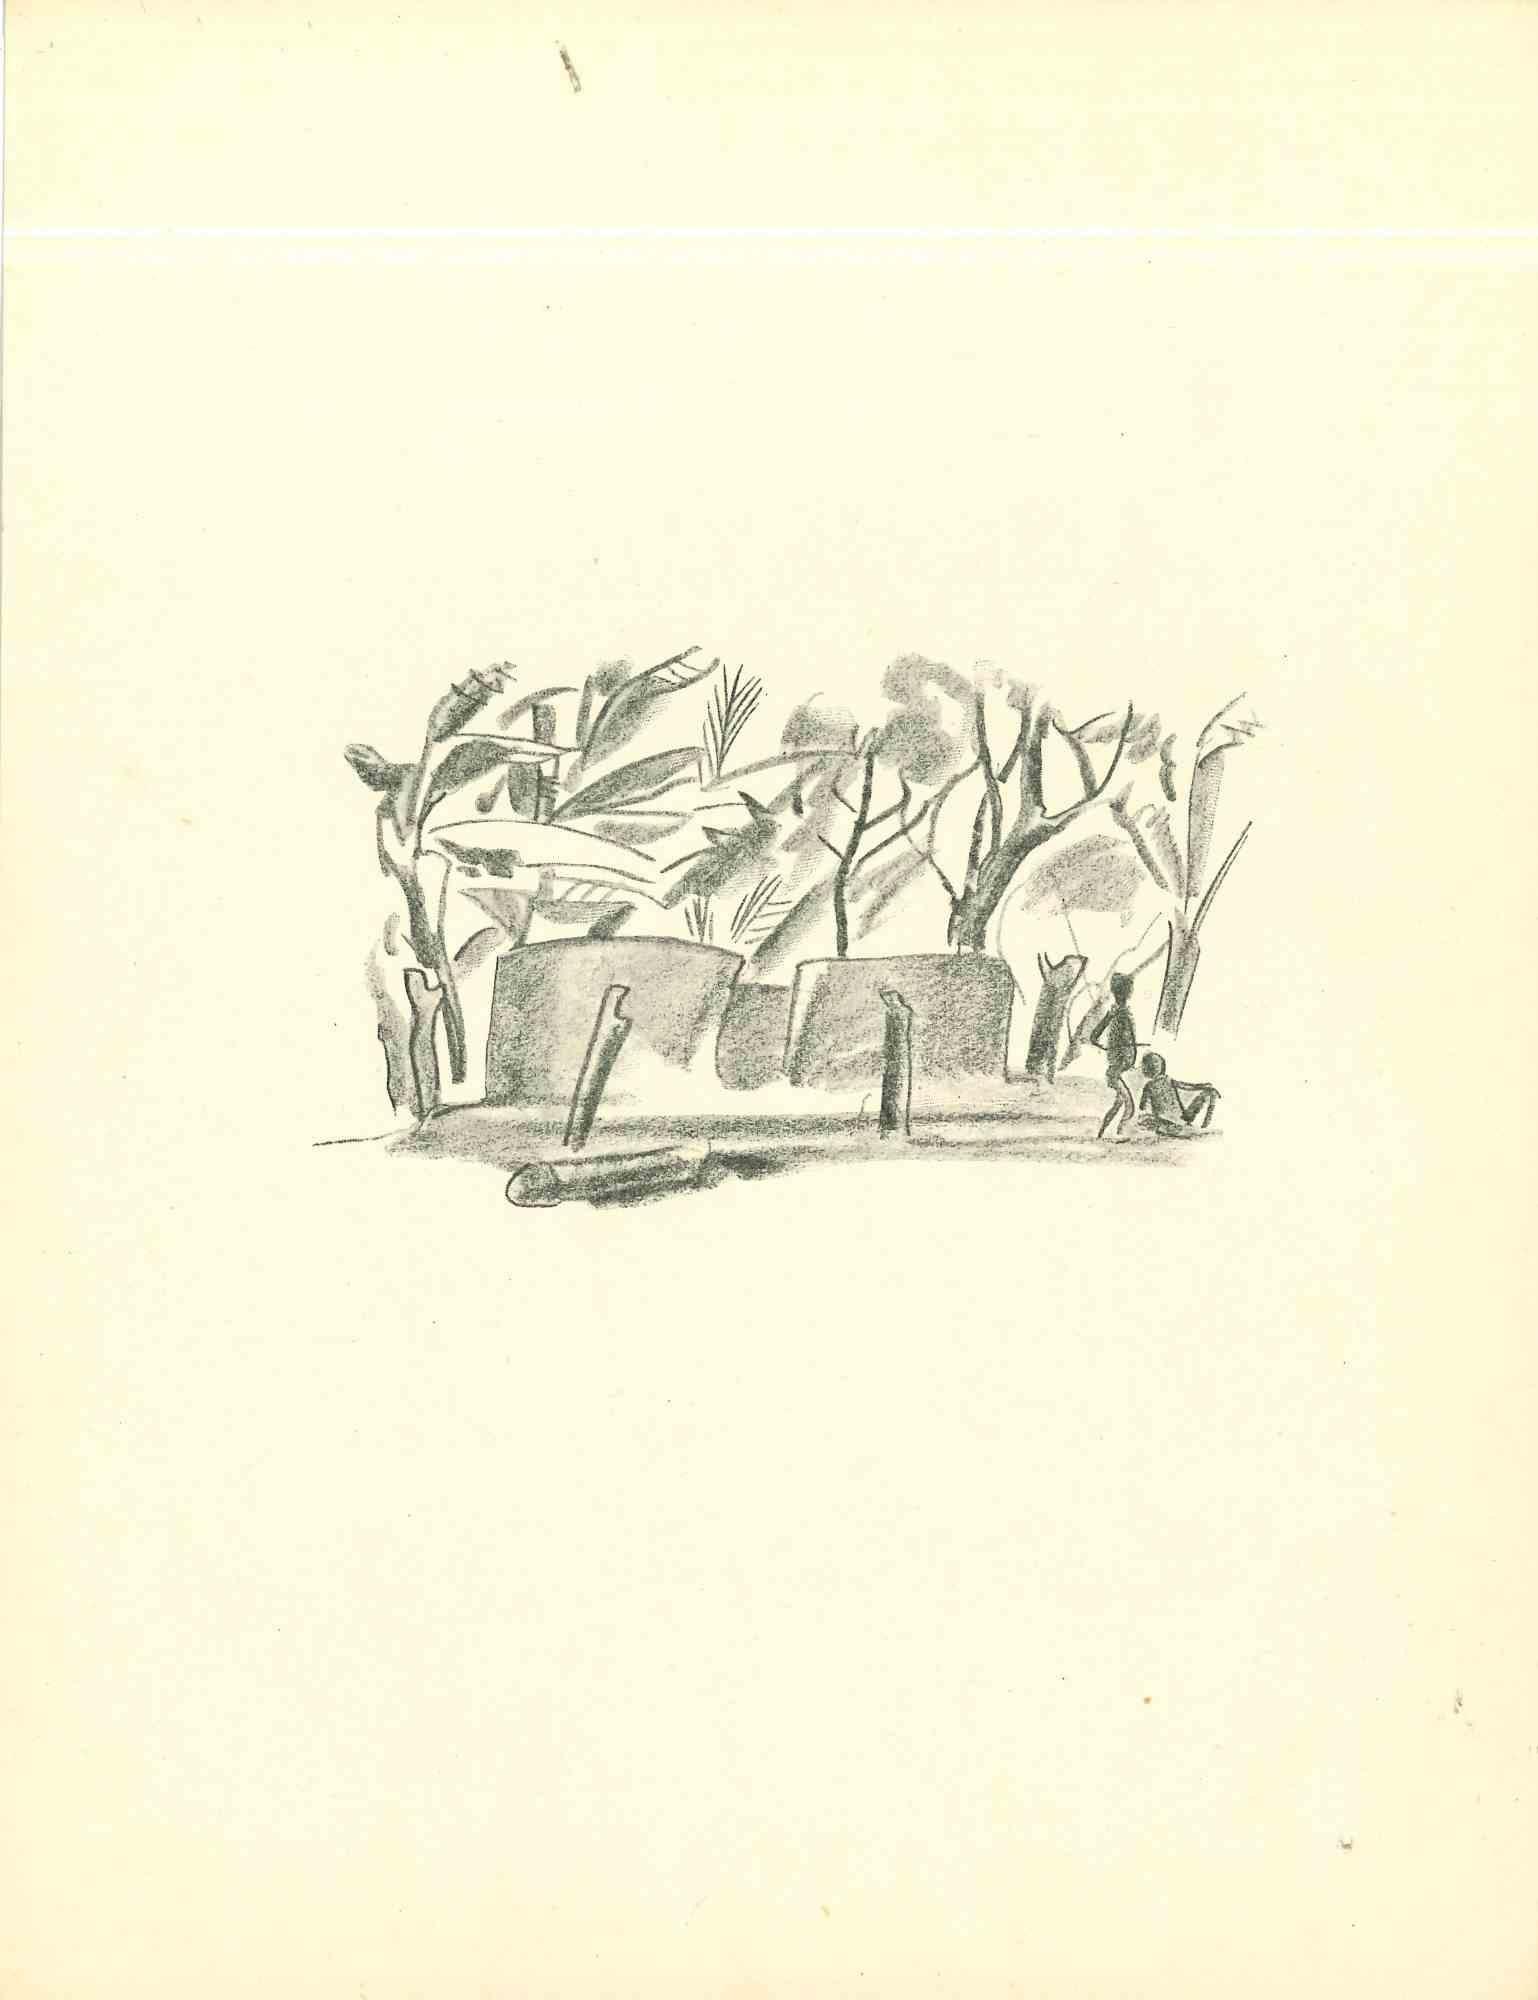 Afrikanisches Dorf  ist eine Original-Lithographie, die in den frühen 1930er Jahren von Emmanuel Gondouin (Versailles, 1883 - Parigi, 1934) hergestellt wurde 

Das Kunstwerk ist mit kräftigen Strichen dargestellt und gehört zu einer Serie mit dem